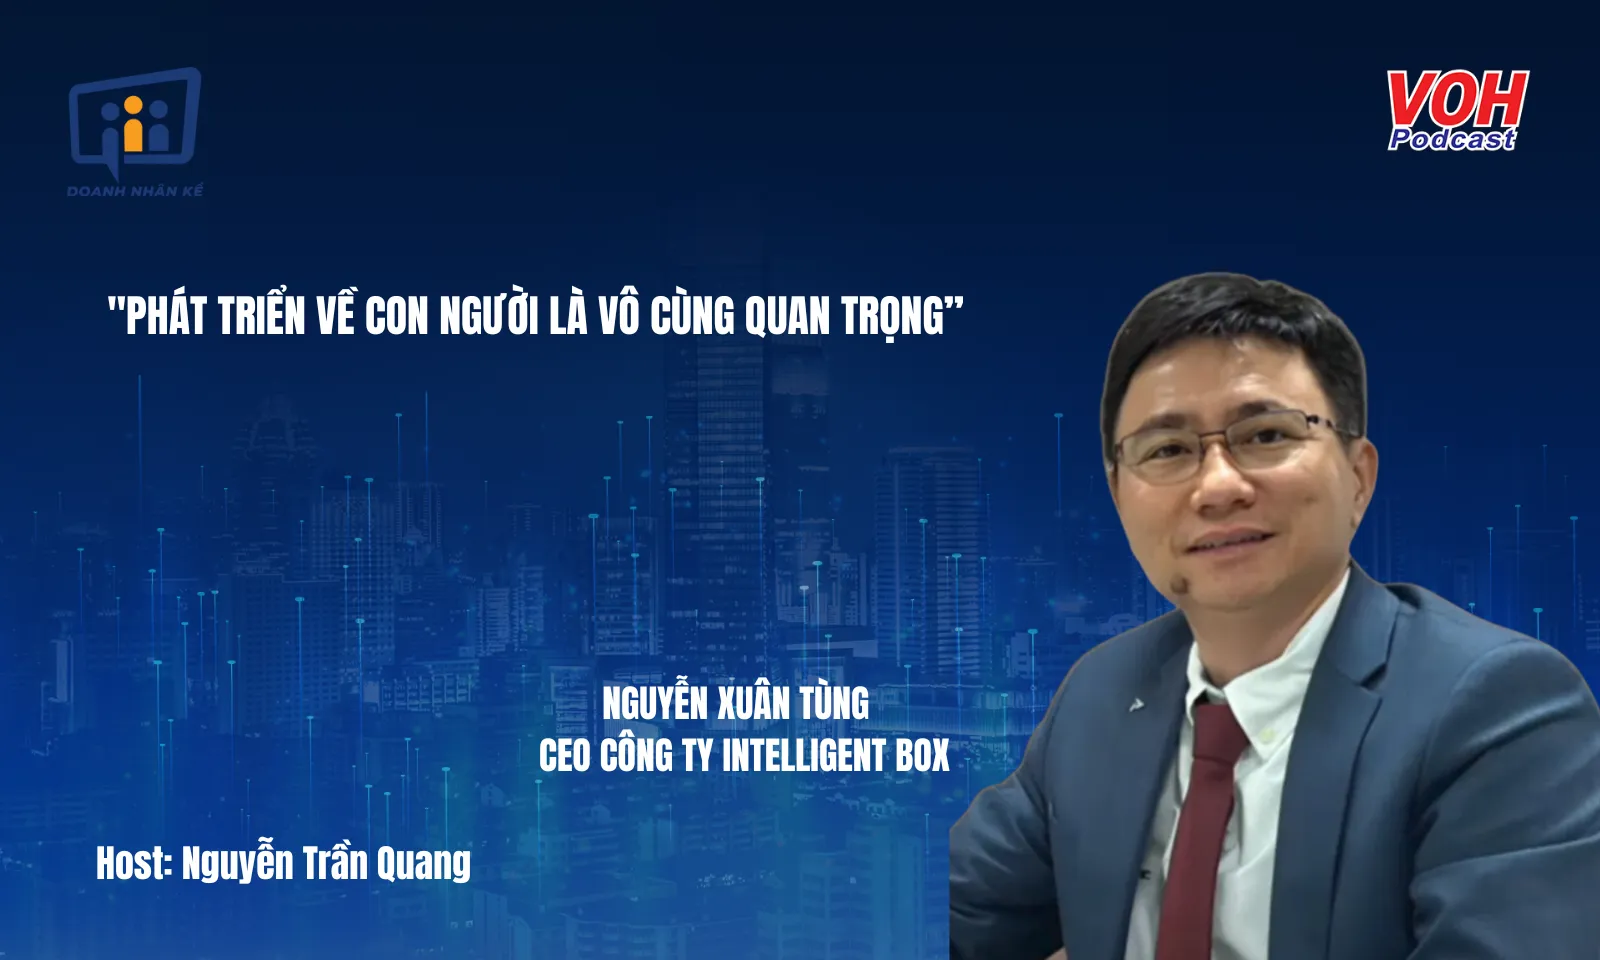 CEO Intelligent Box Nguyễn Xuân Tùng: Đột phá bao bì giấy thông minh | DNK #150